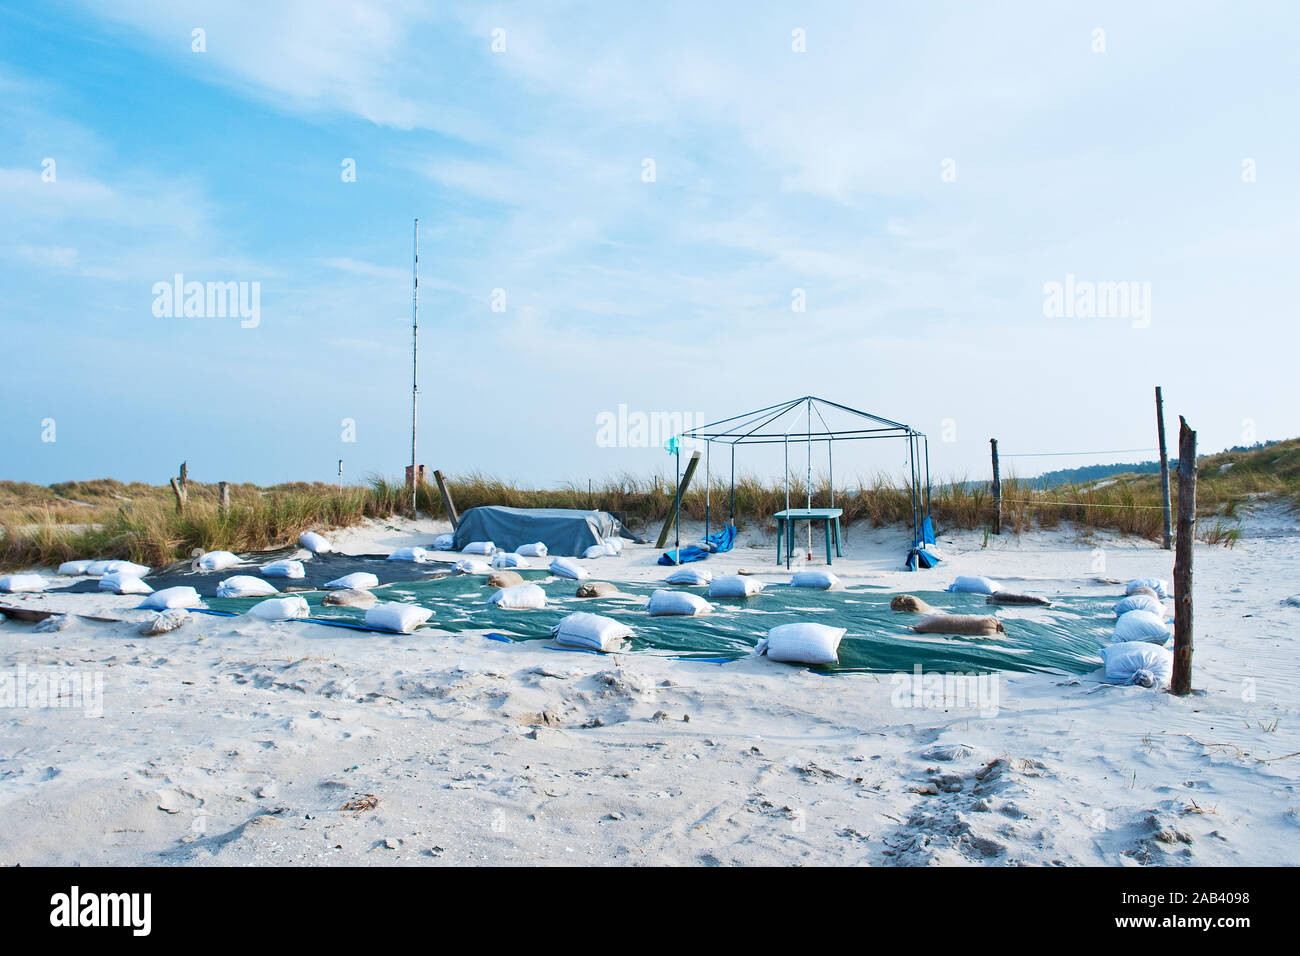 Ein leerer Stellplatz auf einem Campingplatz in Prerow an der Ostsee außerhalb der Saison |uno spazio vuoto parcheggio in un campeggio di Prerow sulla Balti Foto Stock